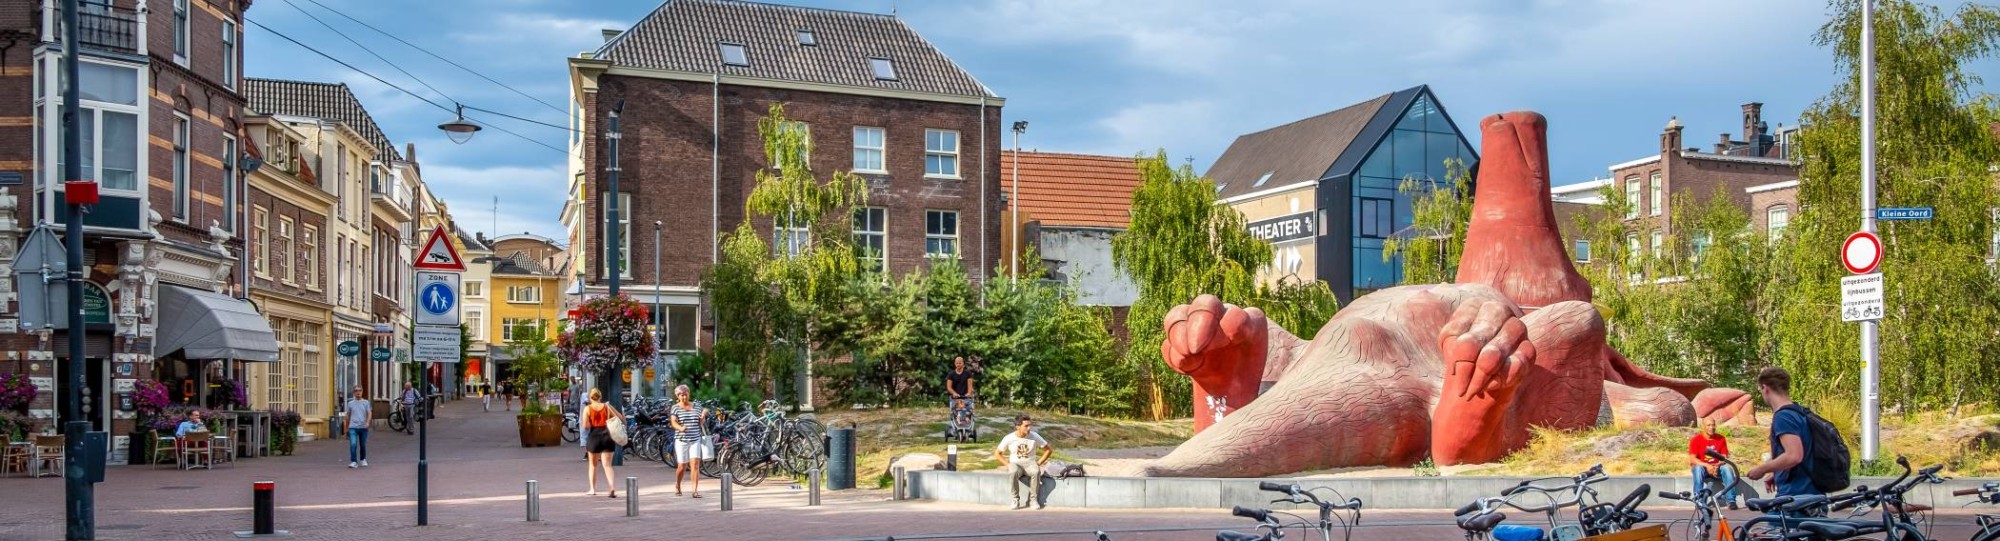 Arnhem stad beeld van aardvarken en fietsen